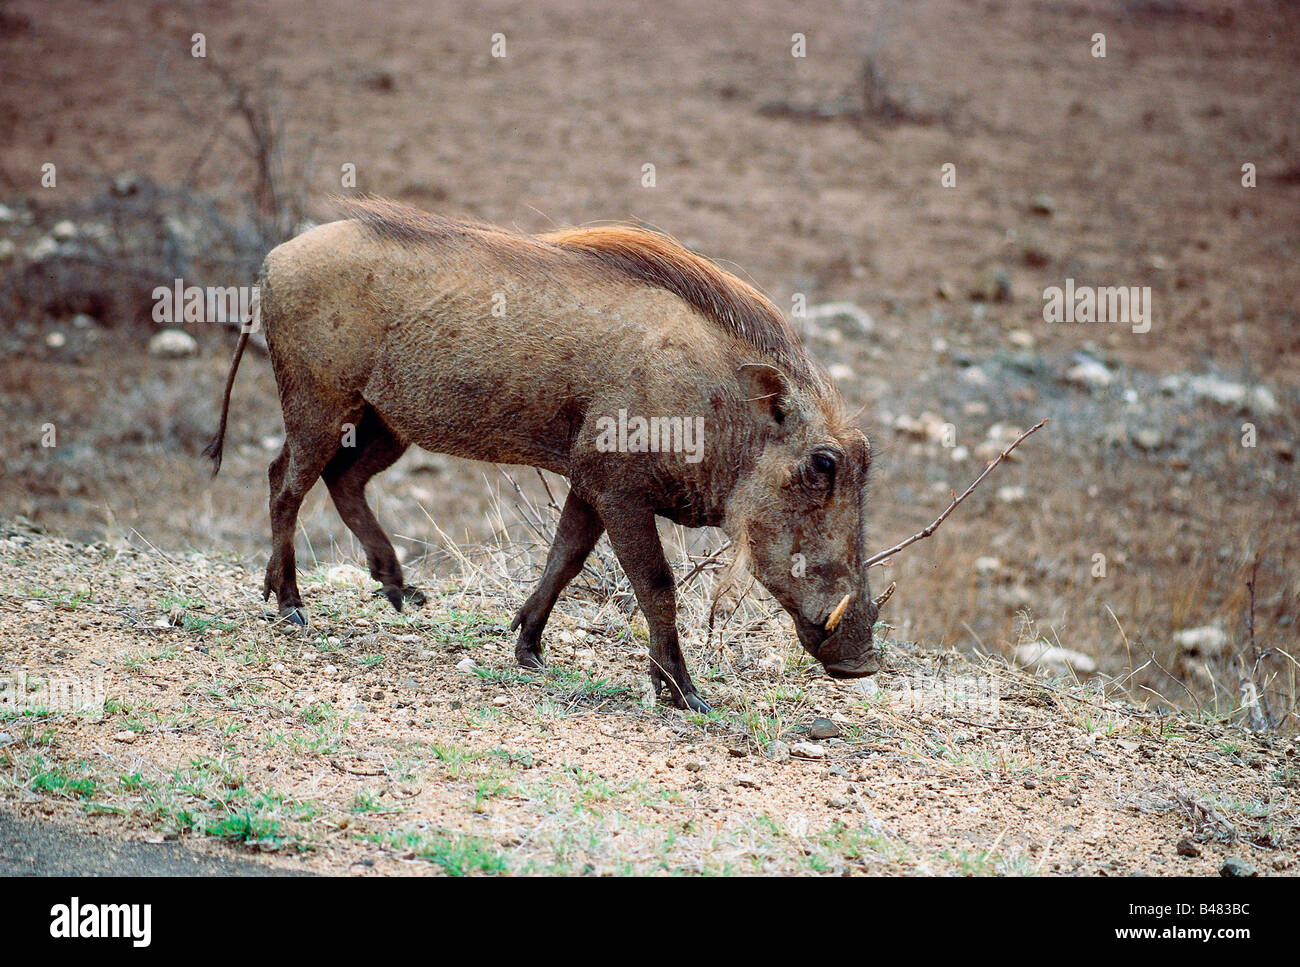 Zoologie / Tiere, Säugetier / Säugetier, Schweine, Red River Hog (Potamochoerus Porcus), stehend, Krüger Nationalpark, Südafrika Stockfoto